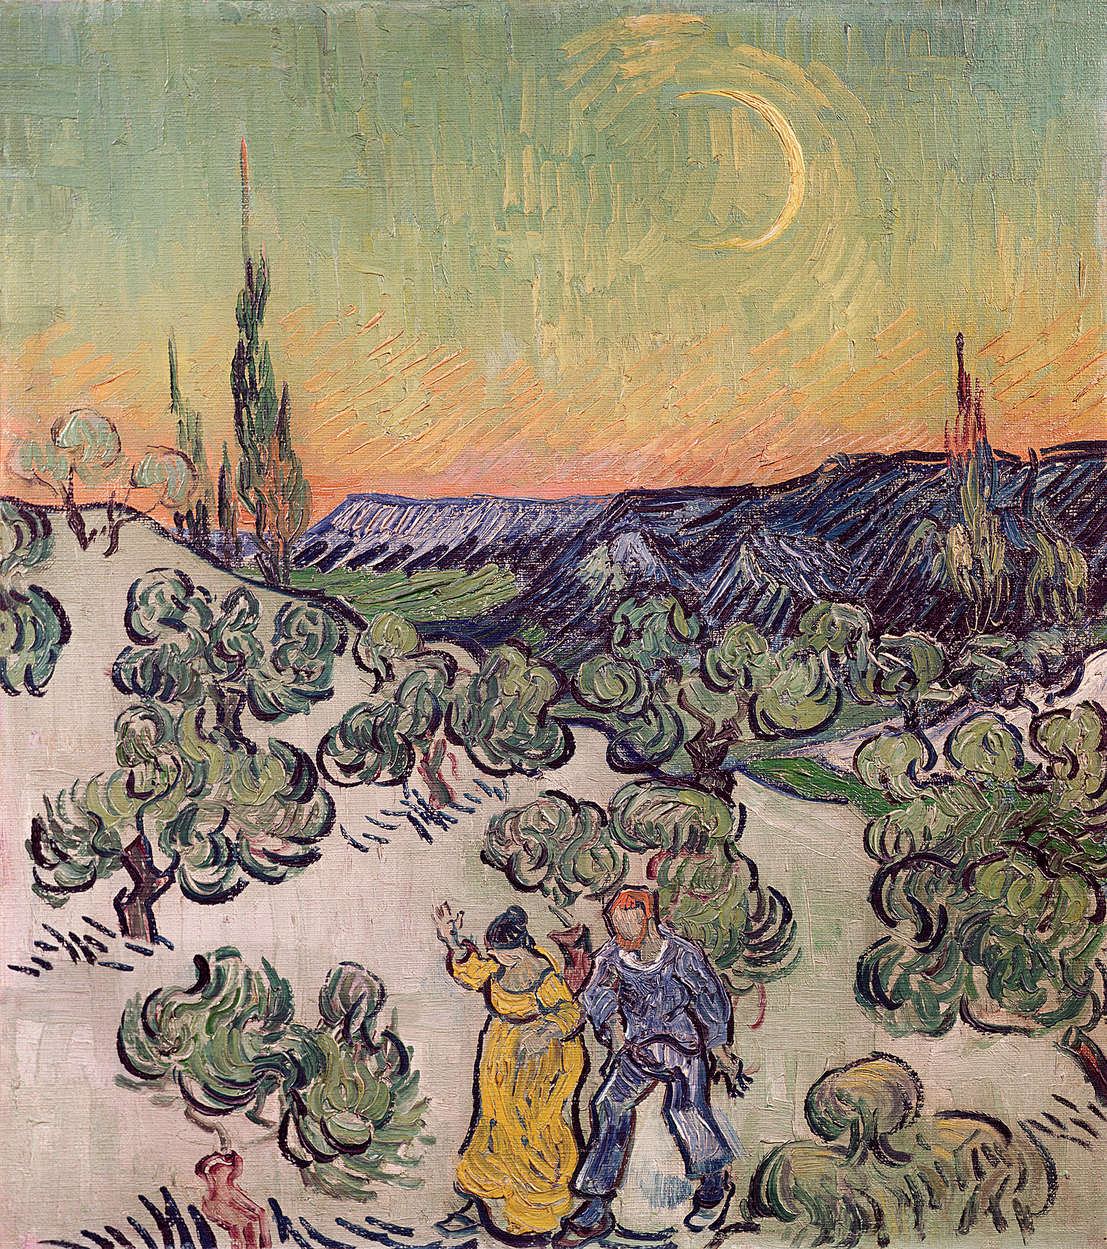             Mural "Paisaje con fábricas a la luz de la luna" de Vincent van Gogh
        